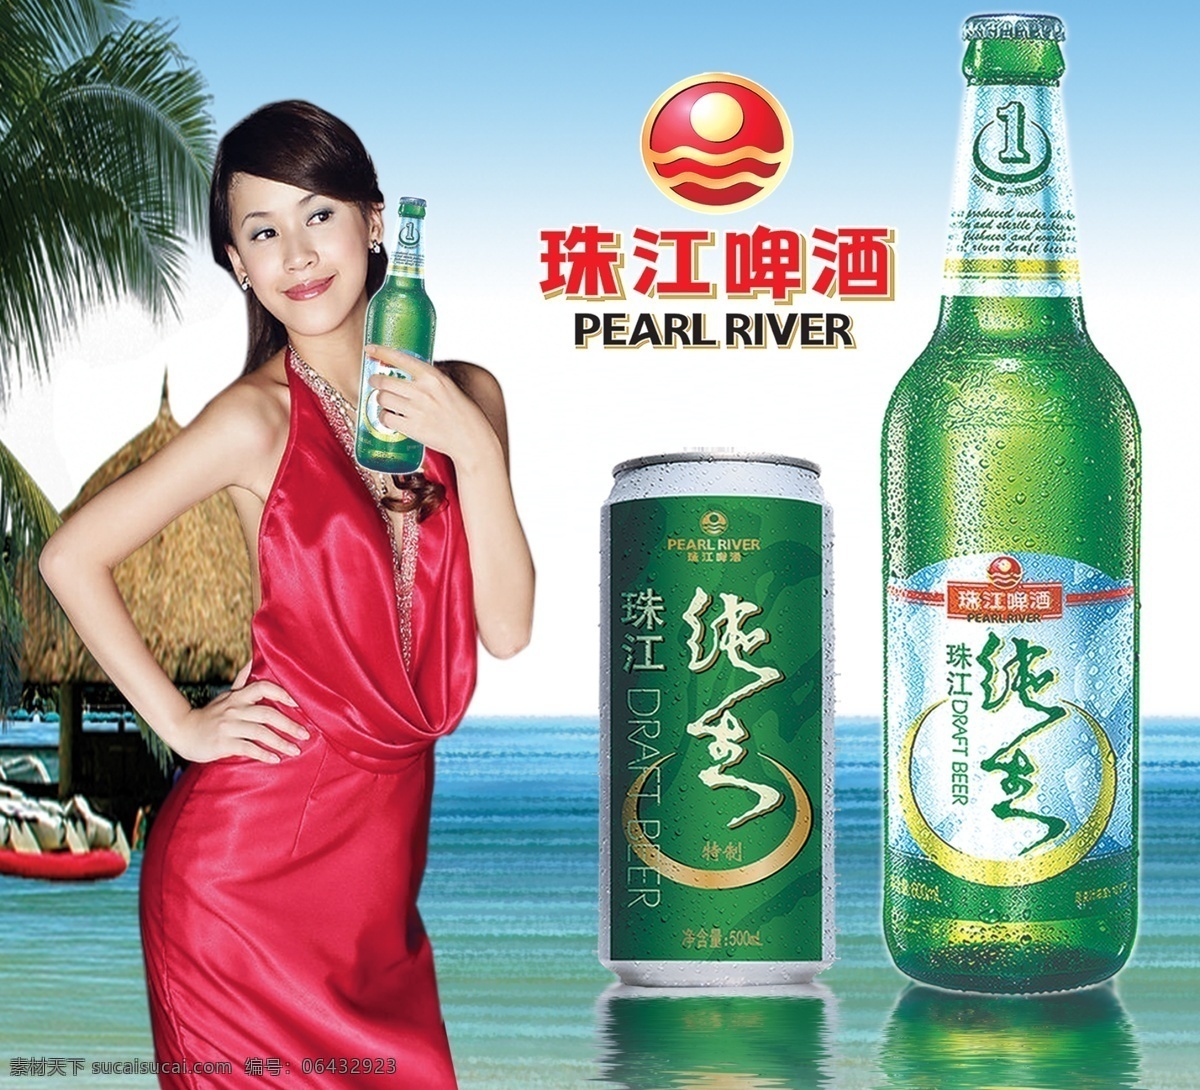 珠江啤酒广告 海滩 美女 啤酒 啤酒广告 珠江啤酒 珠江 广告设计模板 源文件